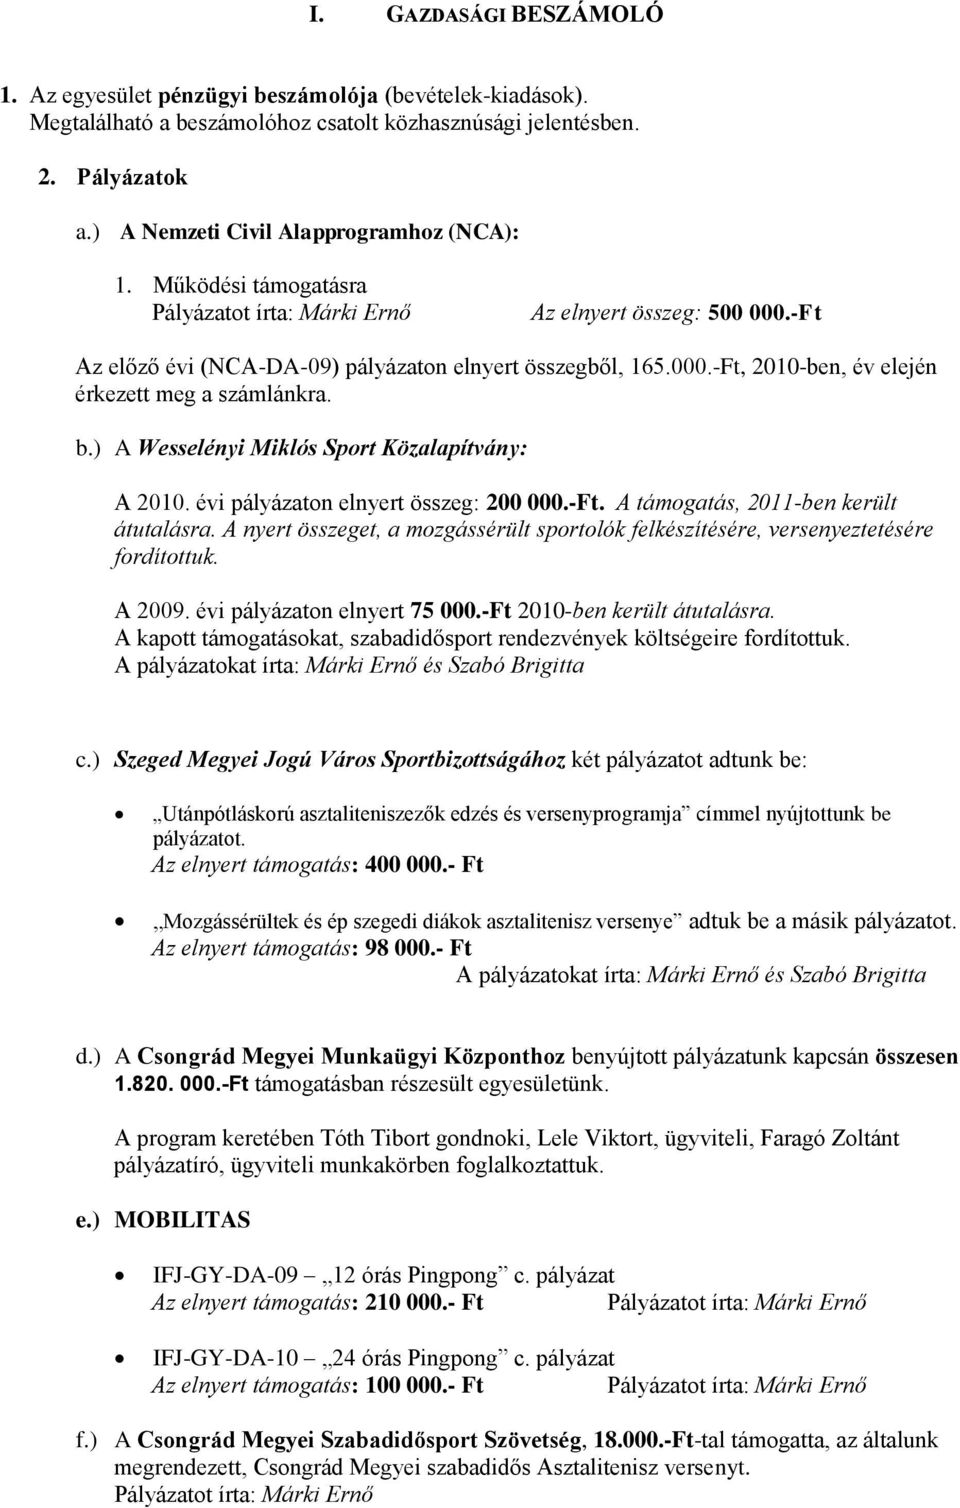 b.) A Wesselényi Miklós Sport Közalapítvány: A 2010. évi pályázaton elnyert összeg: 200 000.-Ft. A támogatás, 2011-ben került átutalásra.